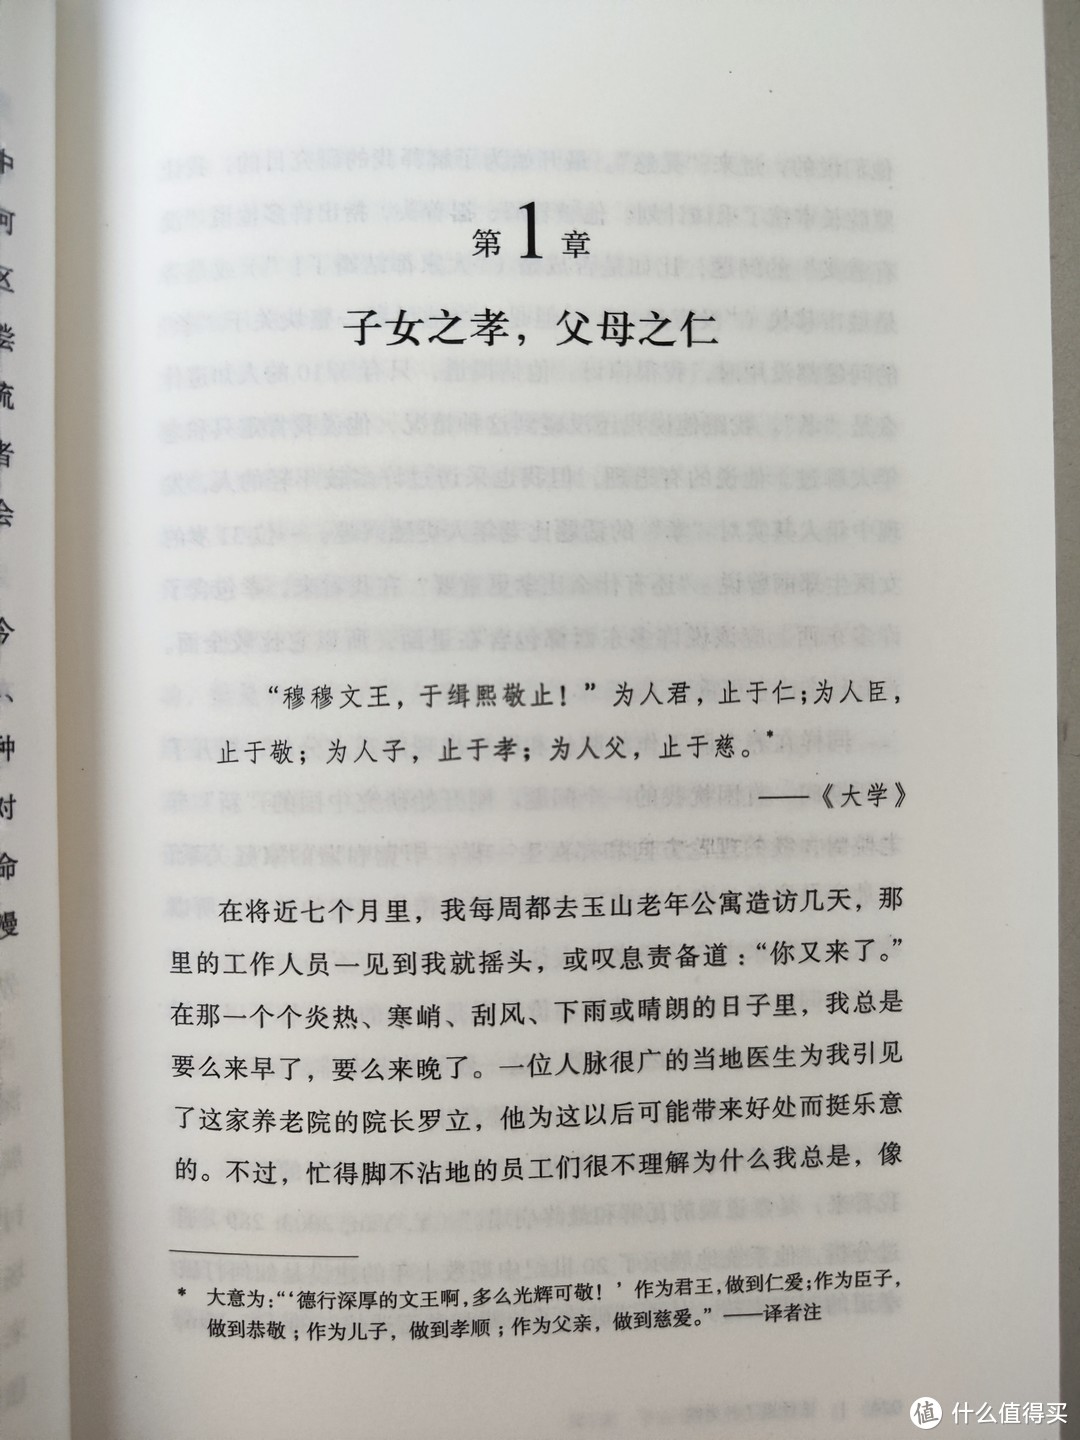 上海三联书店《谁住进了养老院》简评